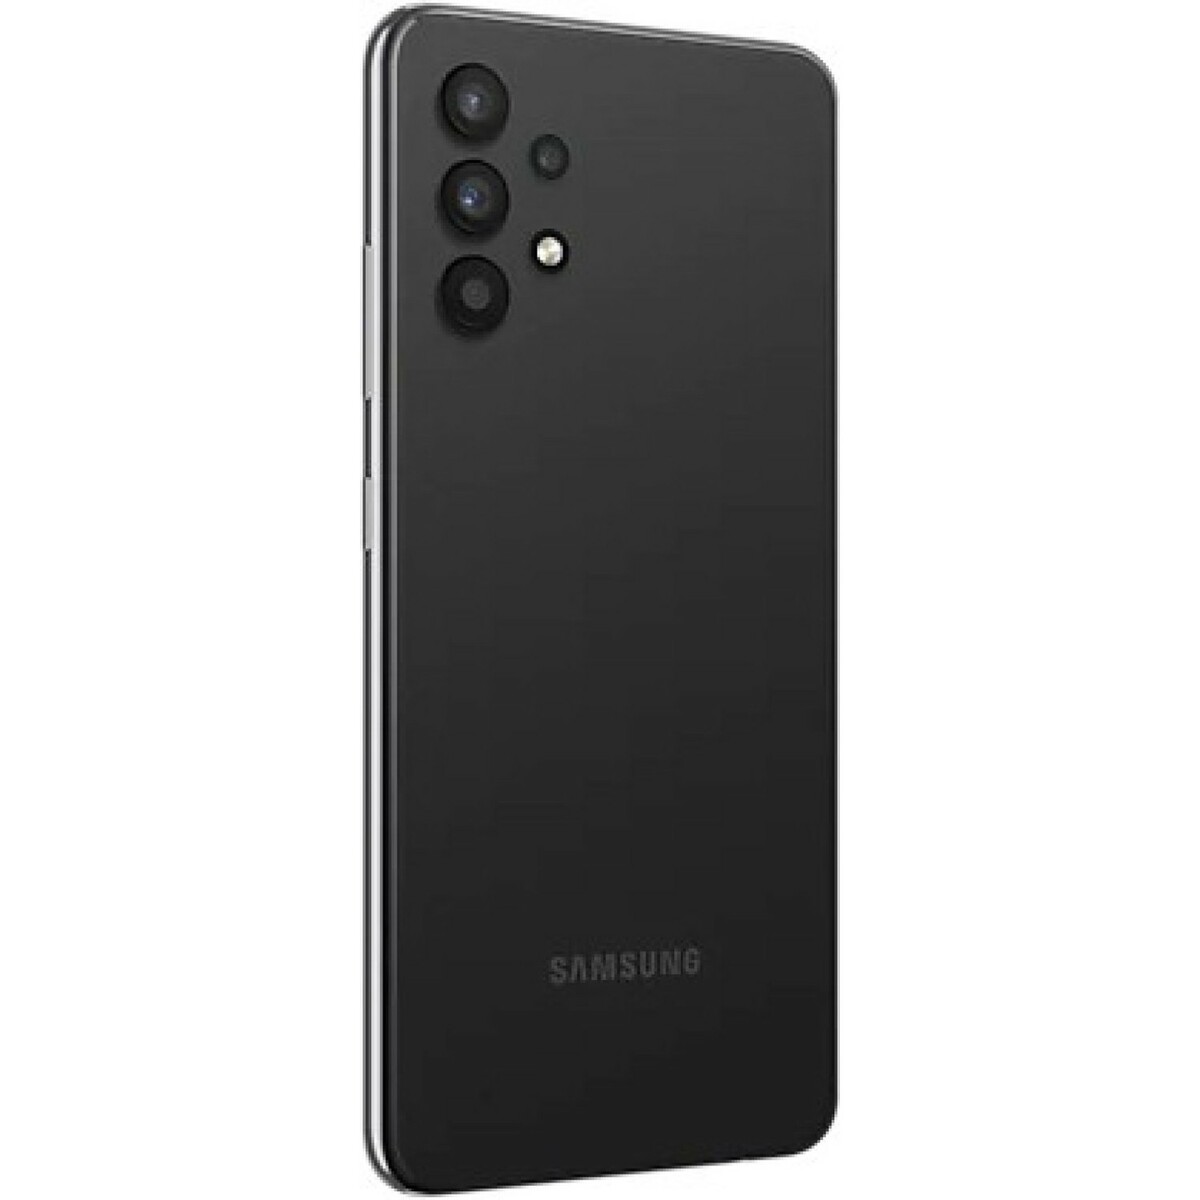 Samsung Galaxy A32 8GB/128GB Awesome Black